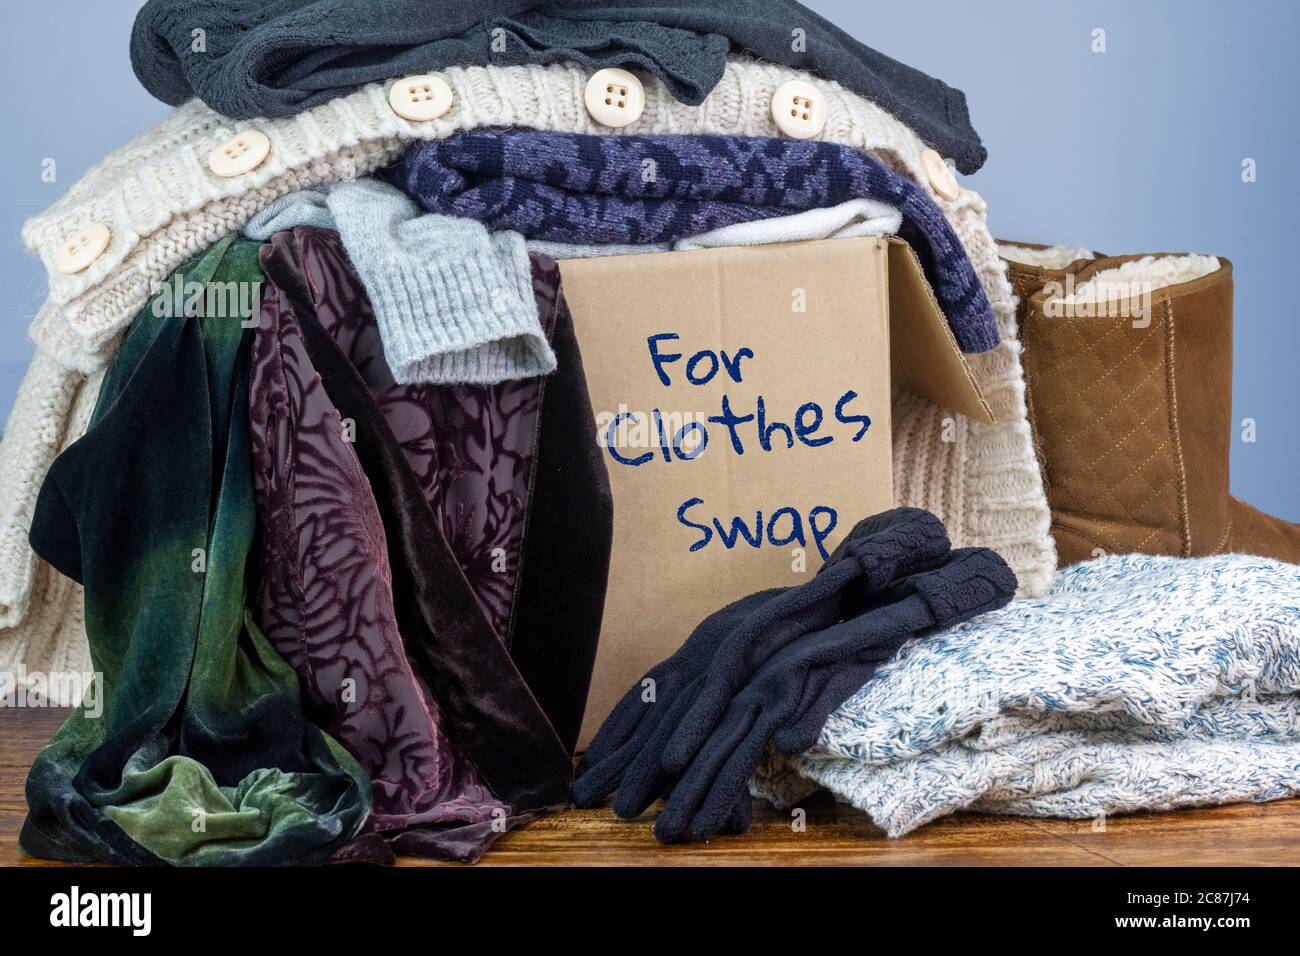 Gebrauchte Kleidung in einer Box markiert für Clothes Swap, wiederverwenden recyceln Kleidung durch Austausch für nachhaltige Mode und Null Abfall Stockfoto